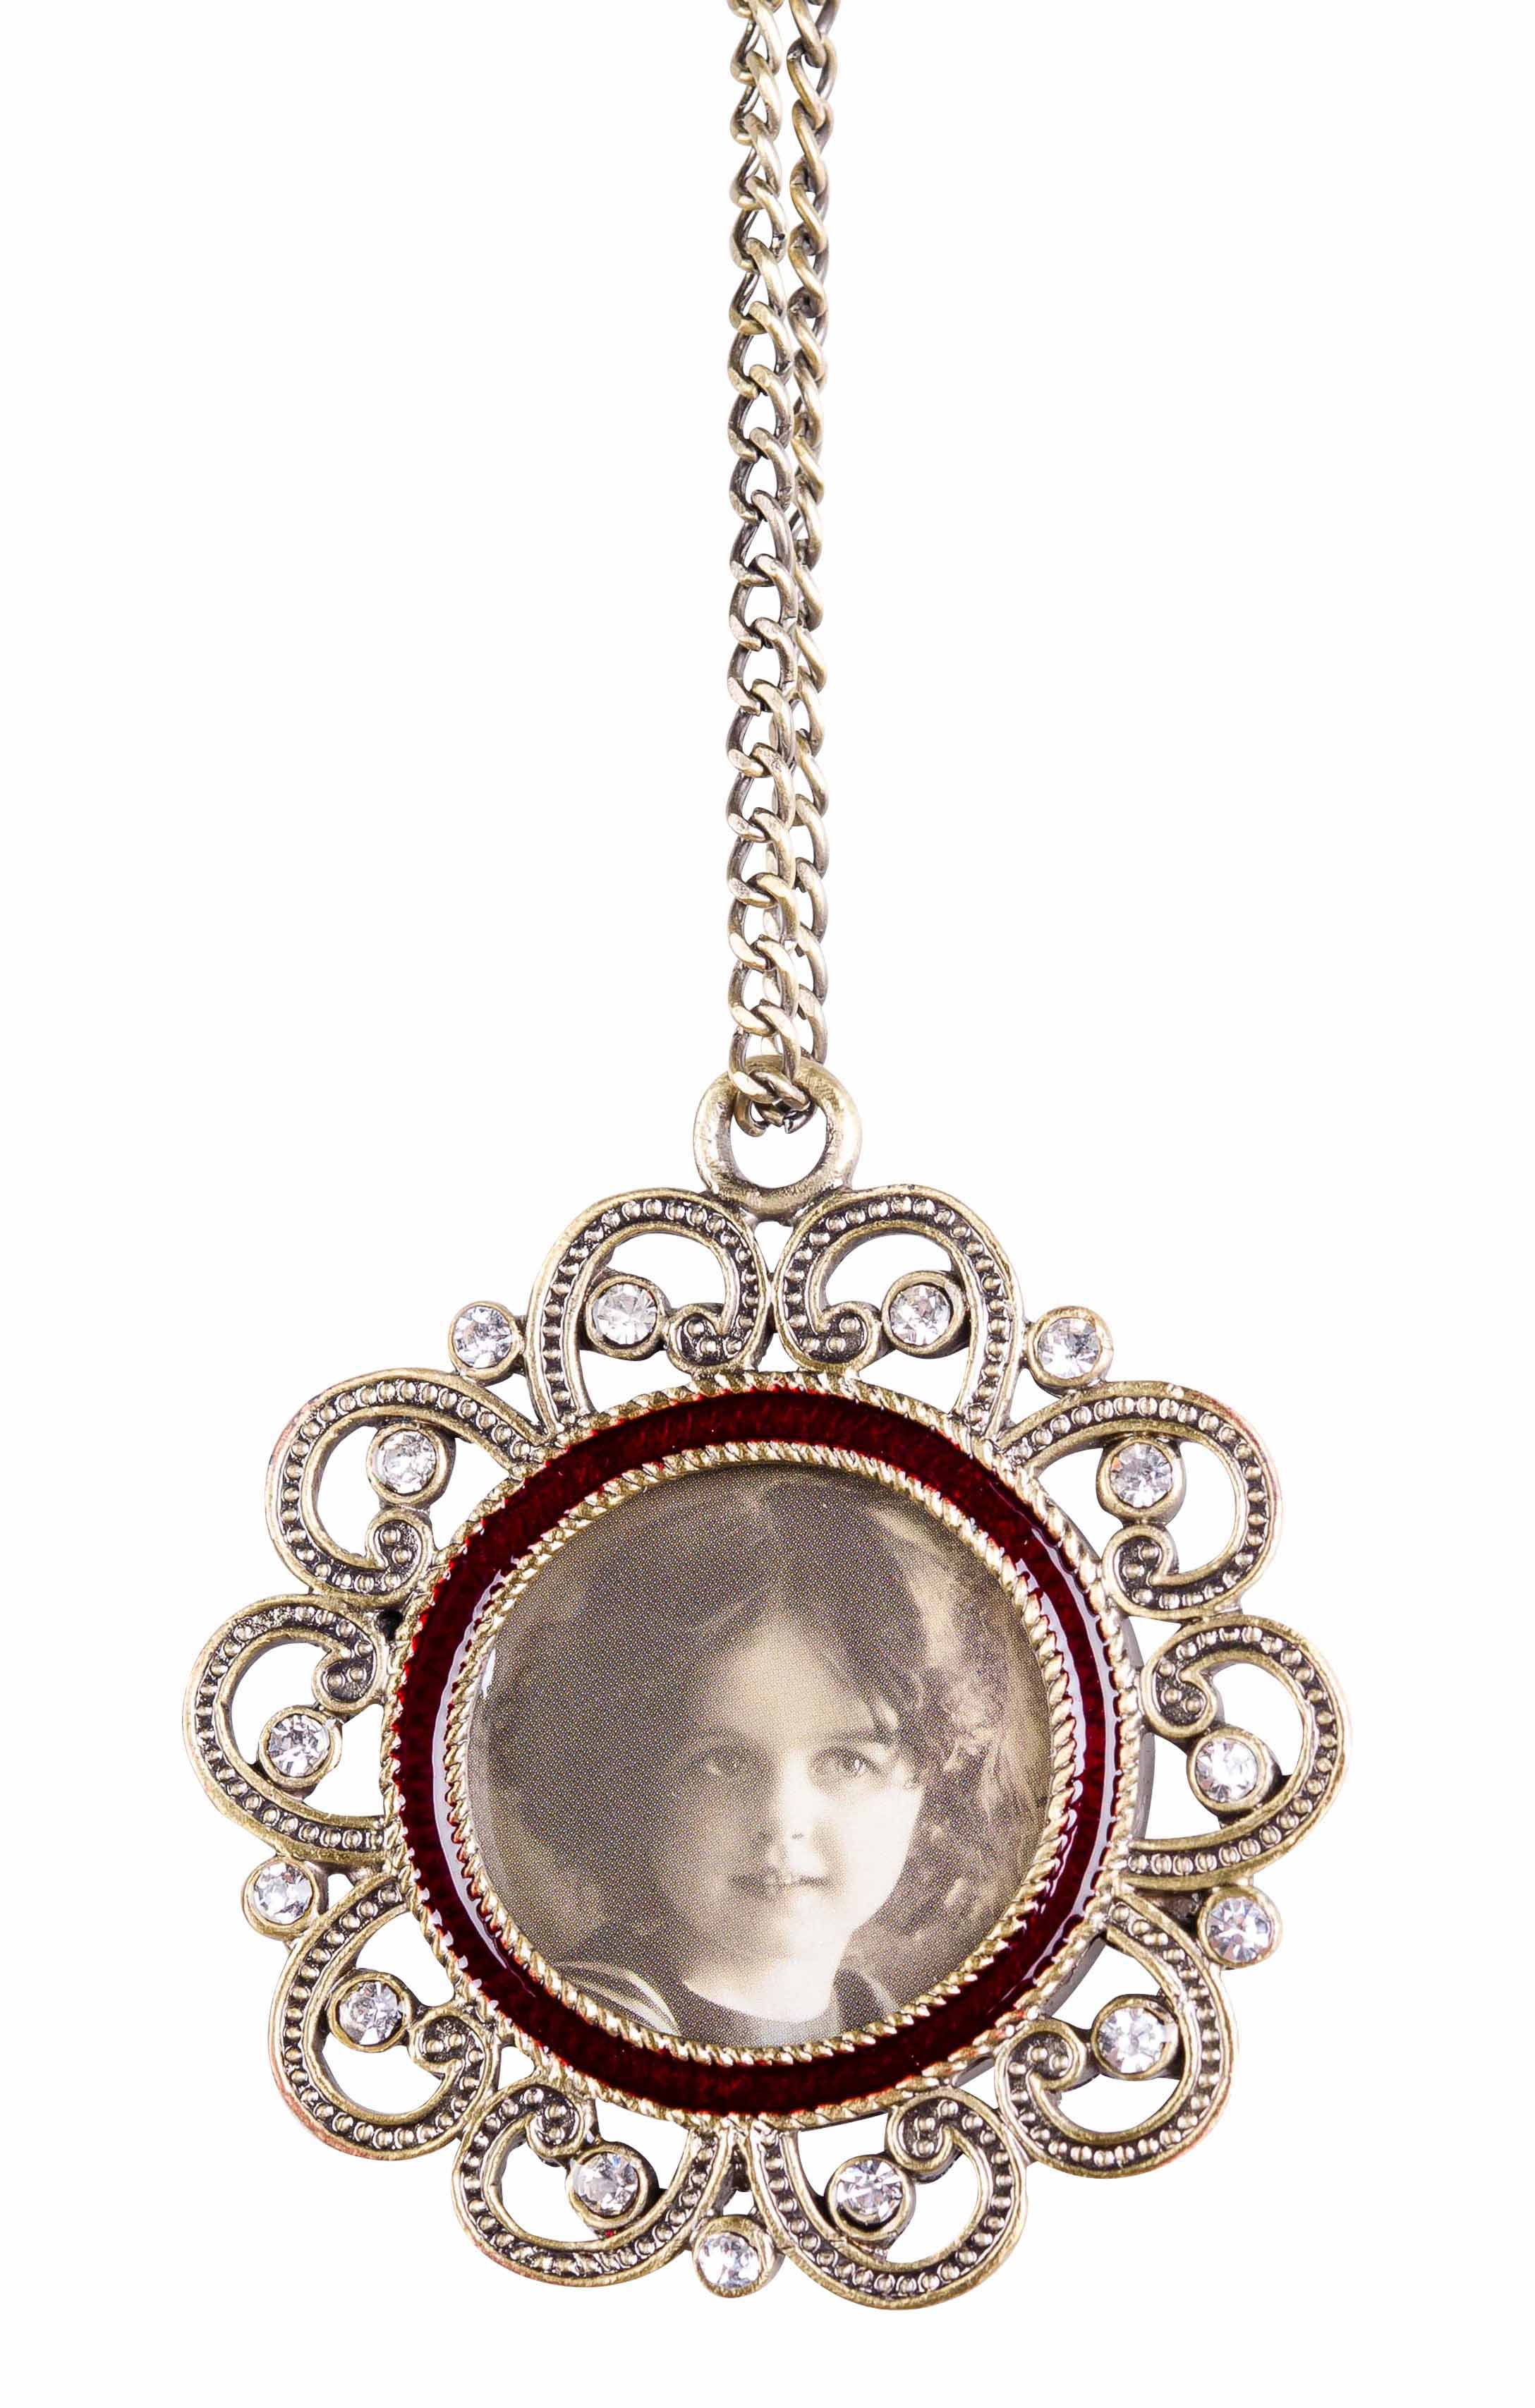 Amuleto colgante estilo antiguo marco de la joyería del esmalte de estaño foto 4x4cm Cadena de fotos | aubaho